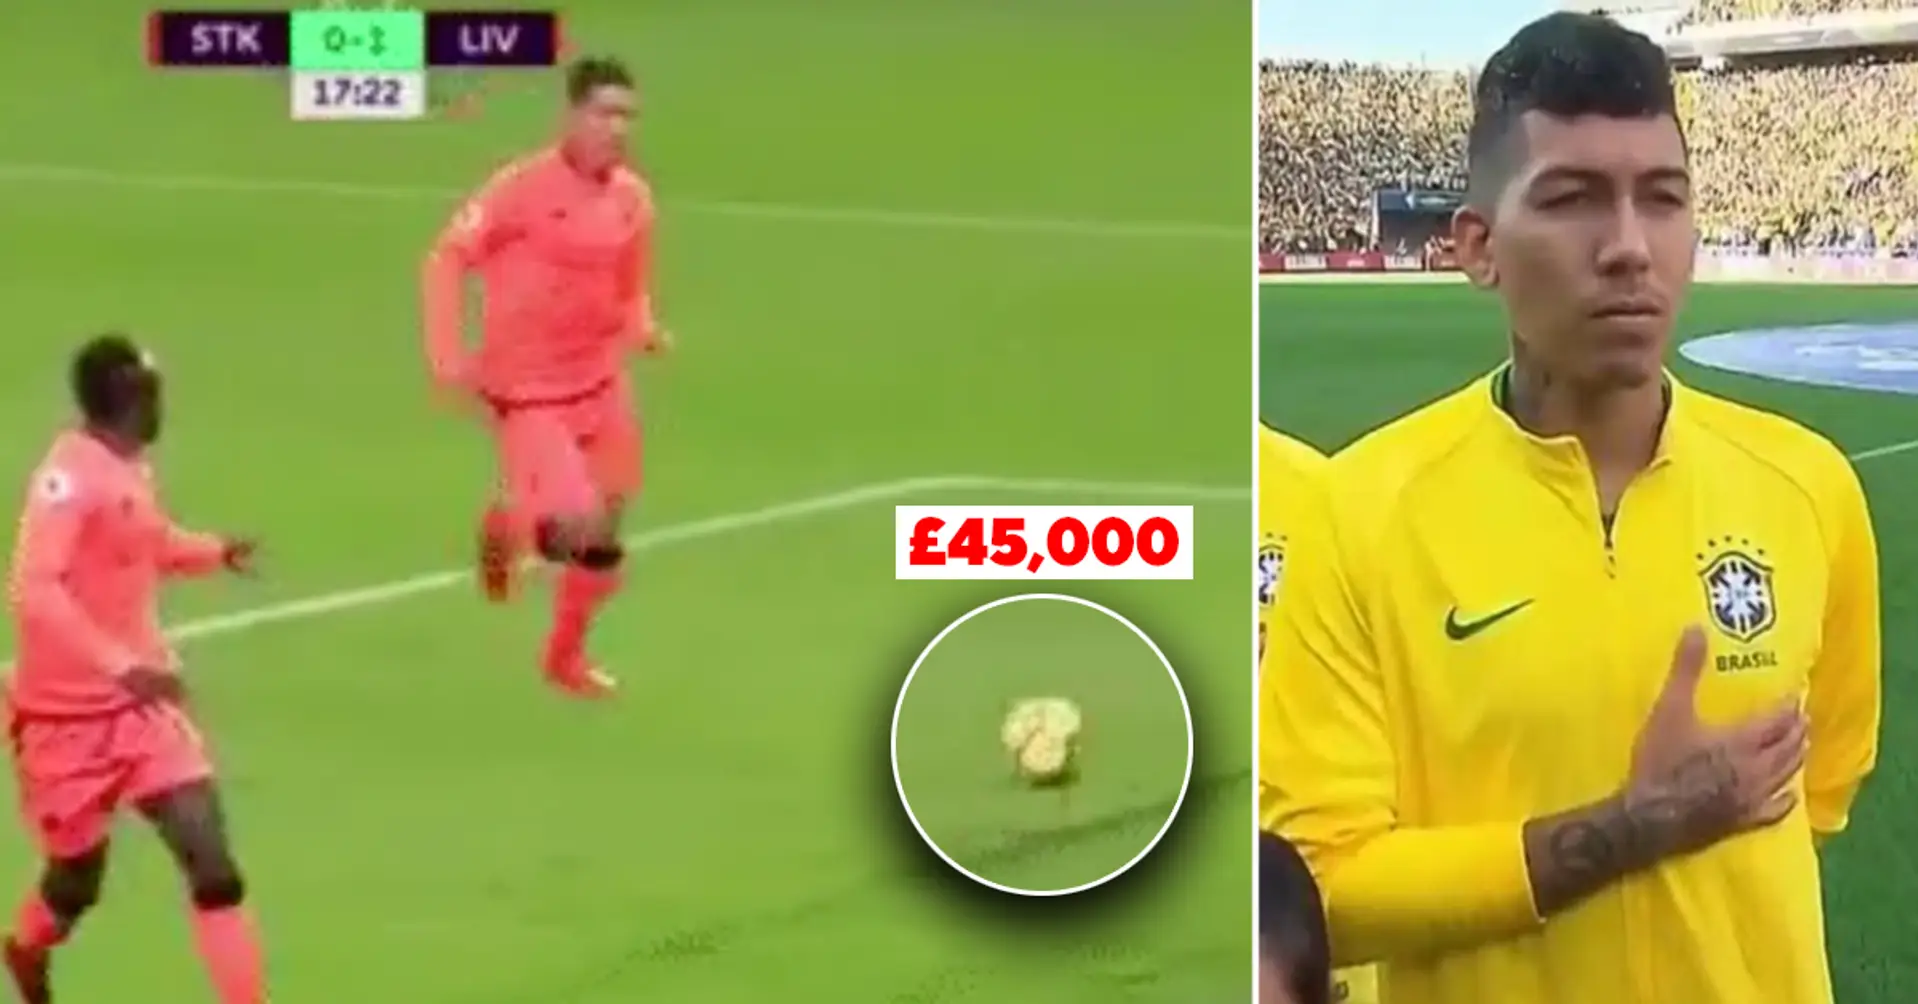 Enthüllt: Warum Roberto Firmino während des Spiels für Liverpool in einer Sekunde 45.000 Pfund verloren hat